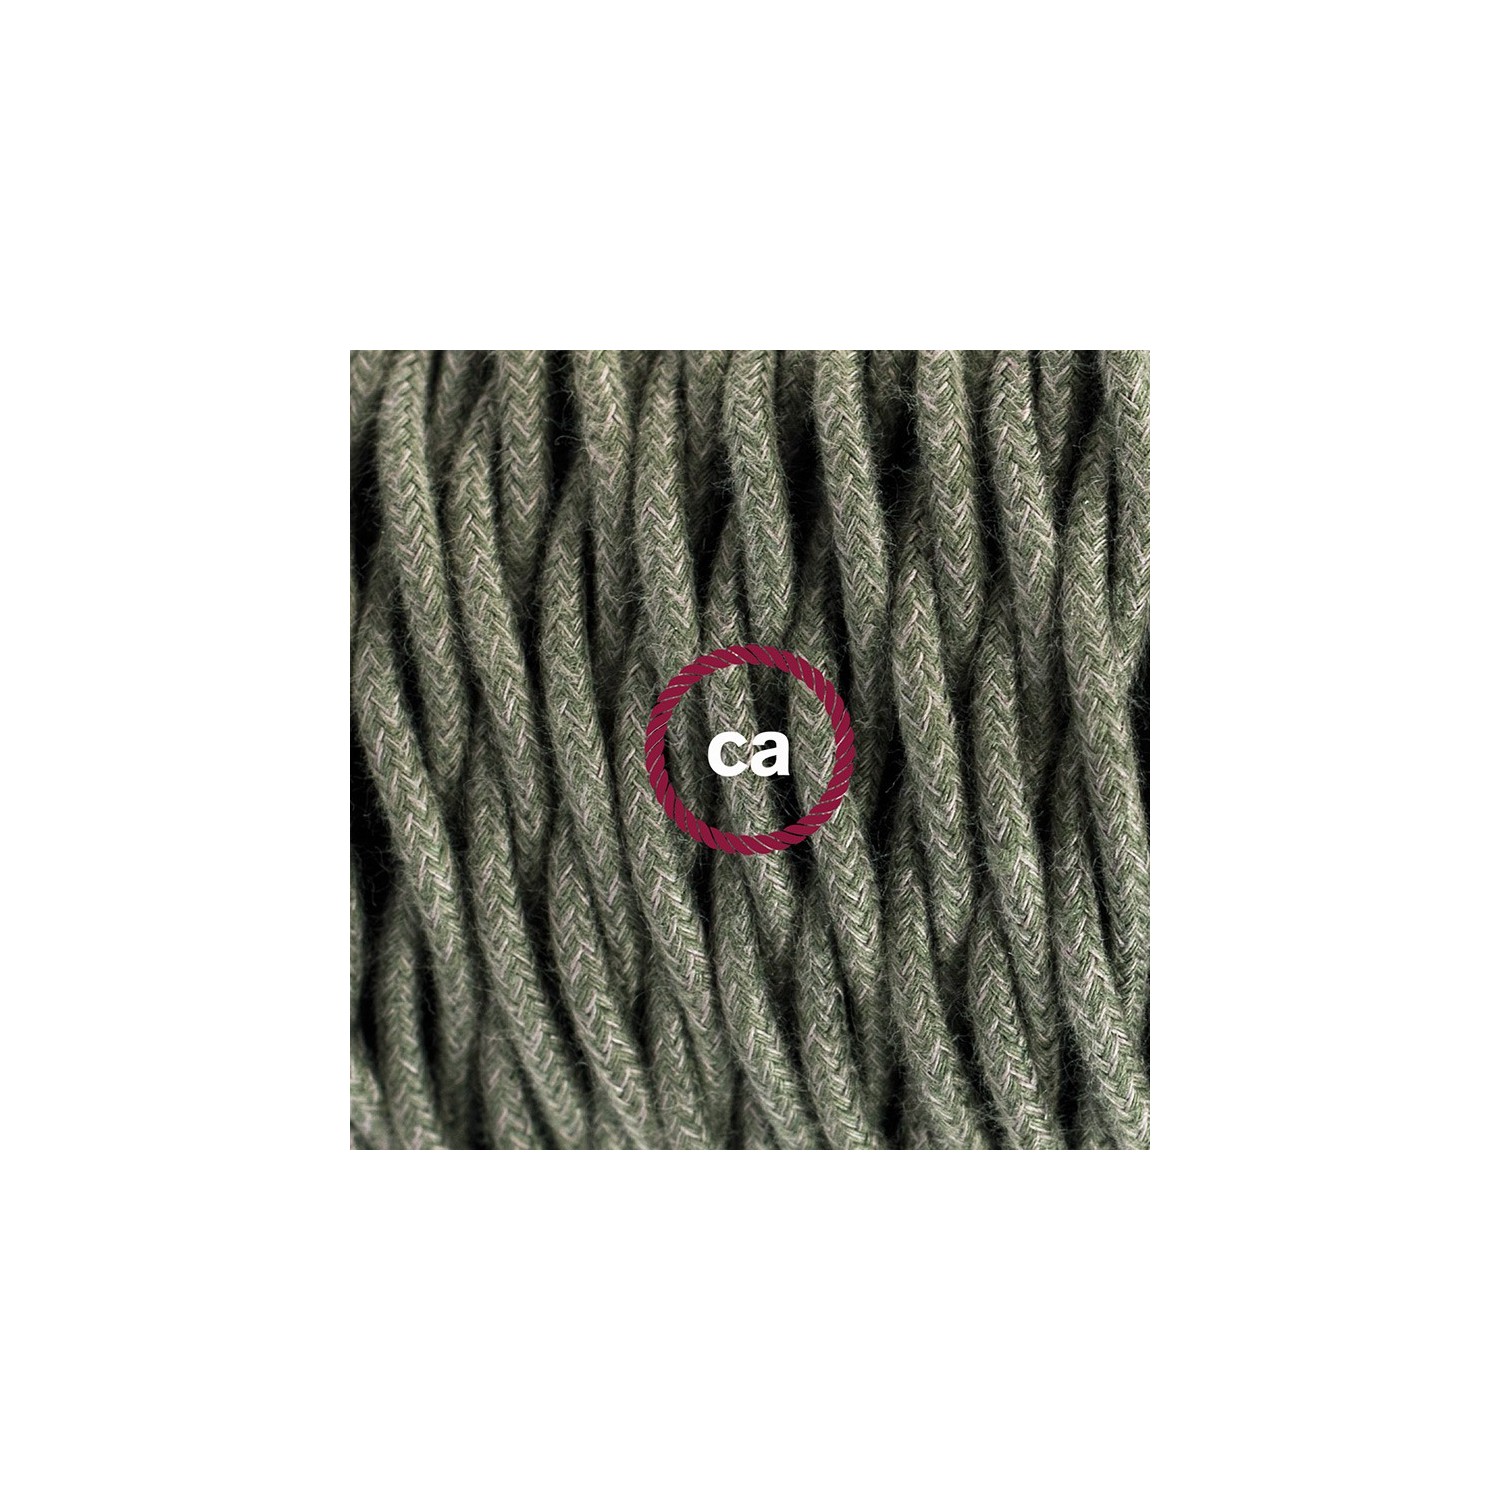 Gevlochten flexibele textielkabel van katoen met schakelaar en stekker. TC63 - groengrijs 1,80 m.